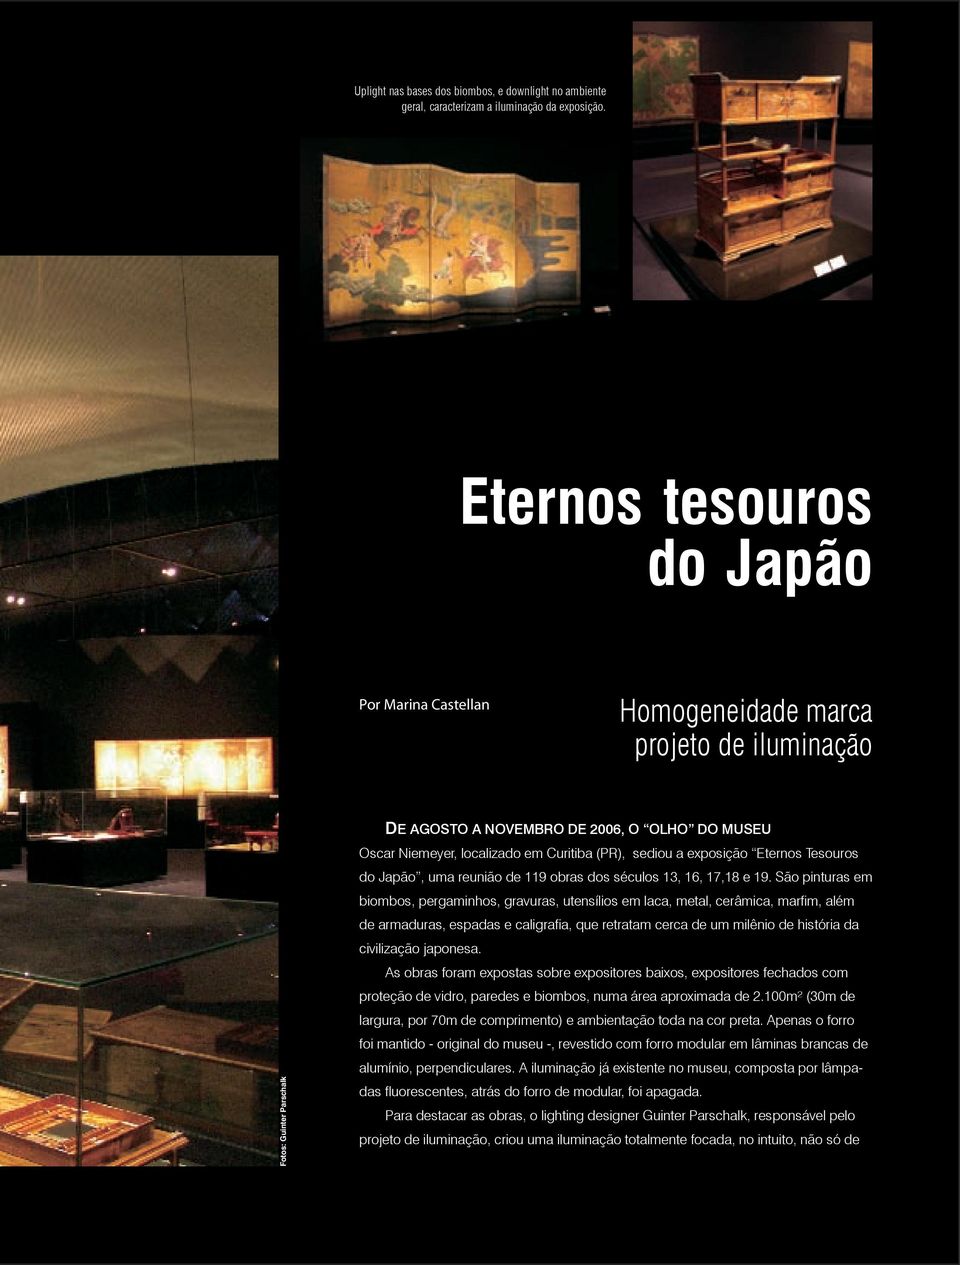 (PR), sediou a exposição Eternos Tesouros do Japão, uma reunião de 119 obras dos séculos 13, 16, 17,18 e 19.